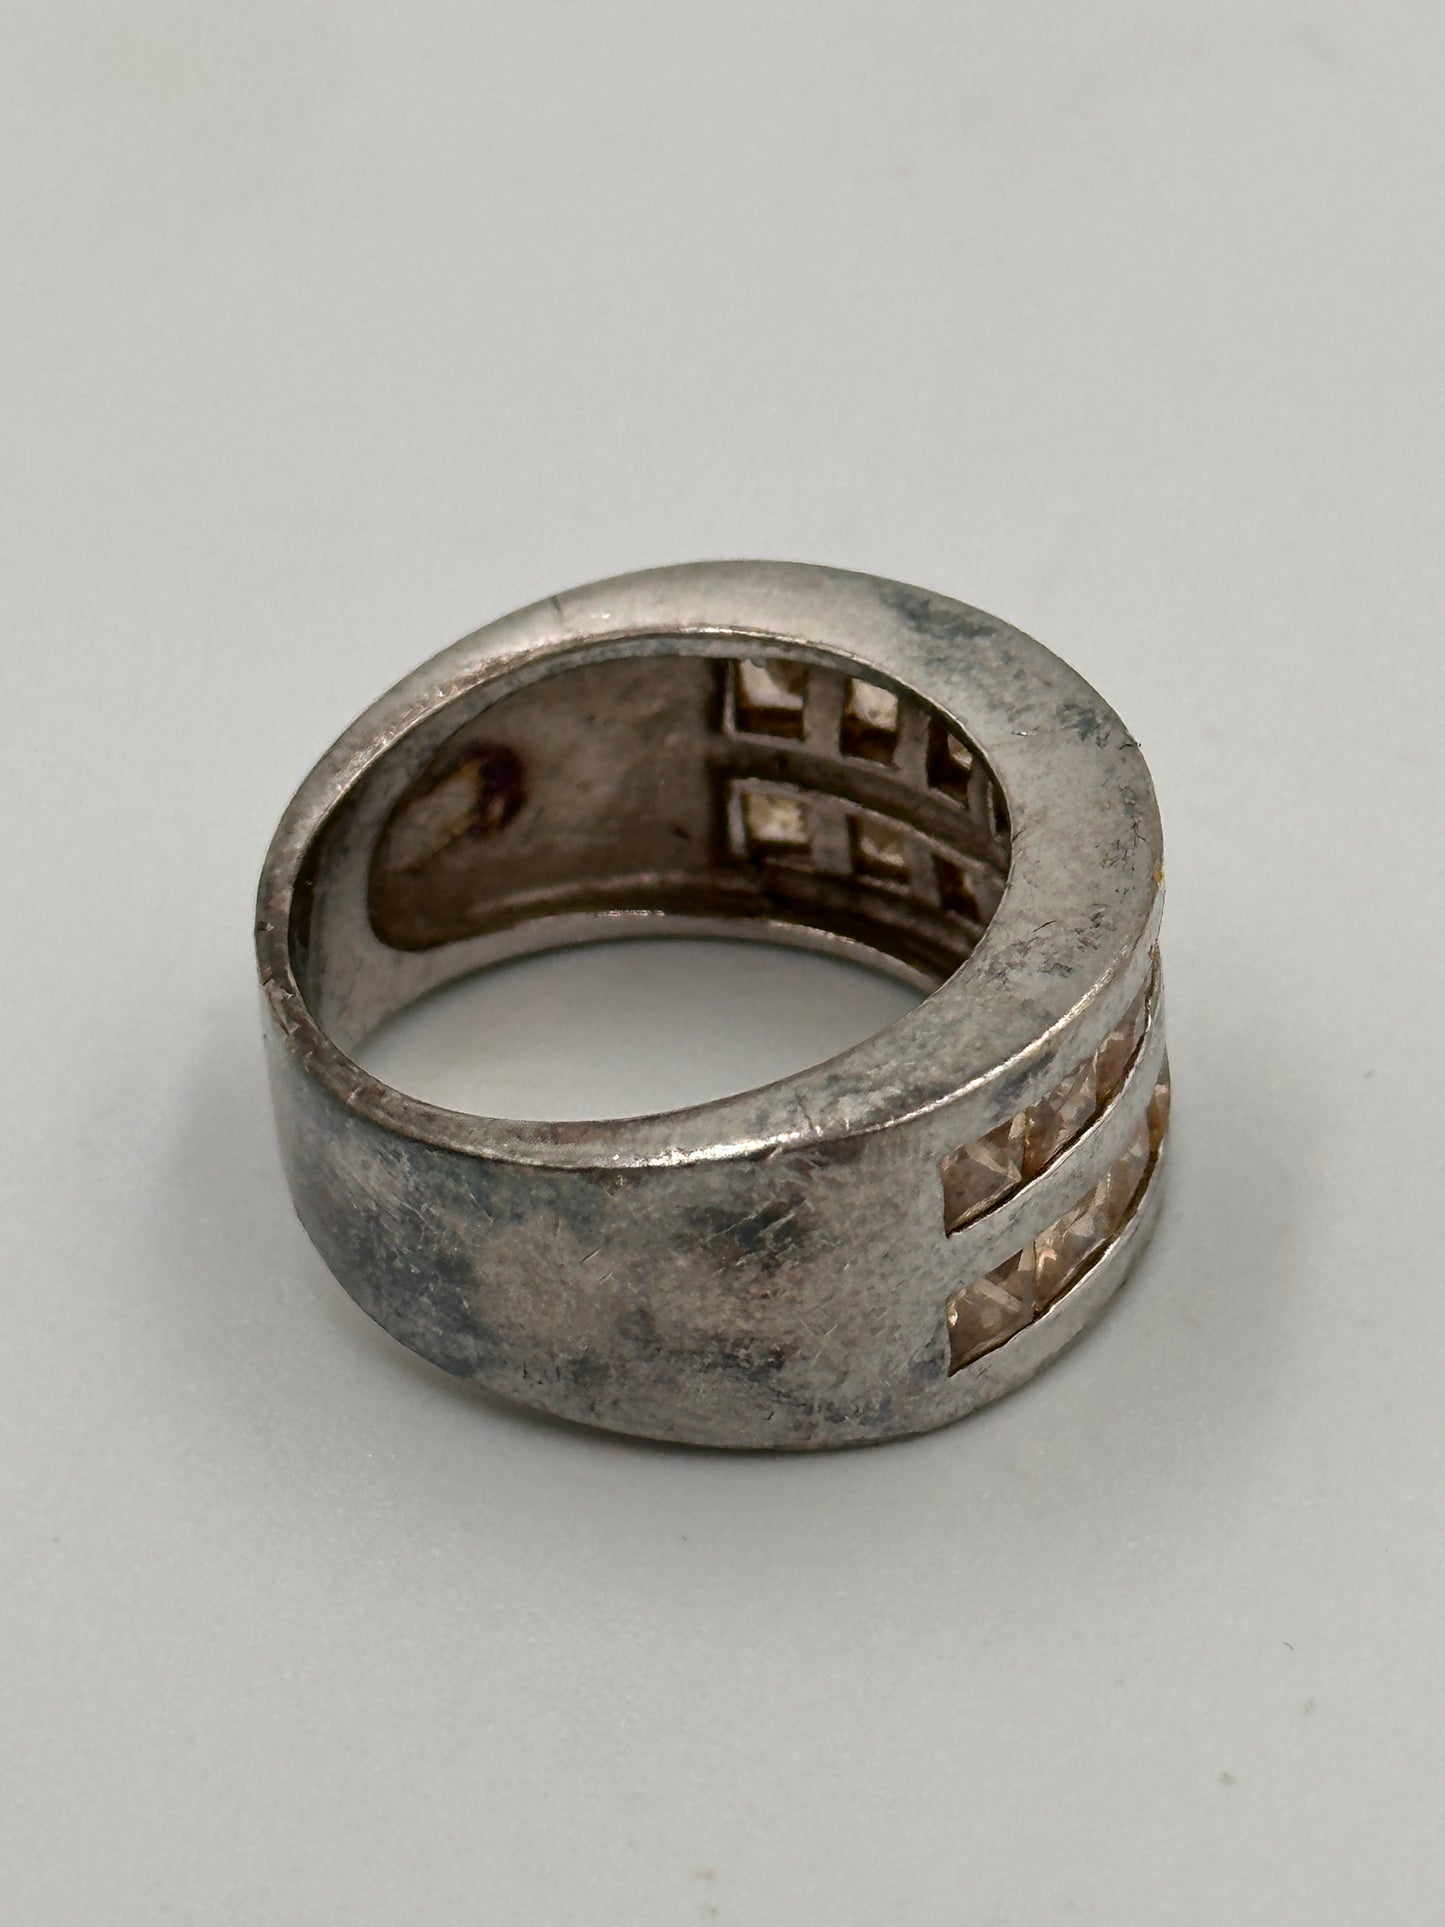 Vintage Silber 925 Ring mit Zirkonia Steinen